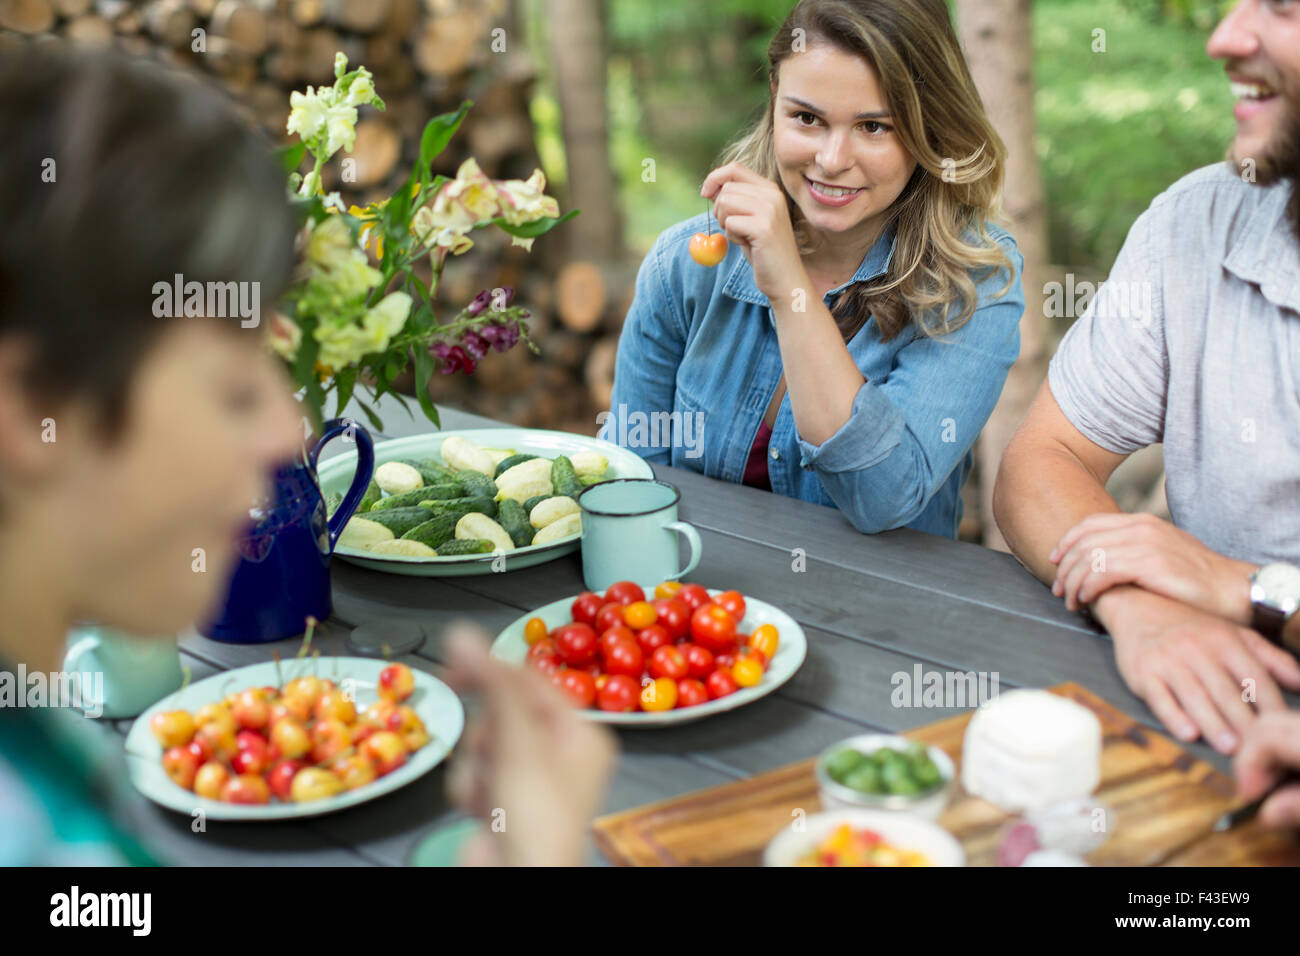 Tre persone sedute a un tavolo all'aperto, con frutta fresca e verdure in piatti sul tavolo. Foto Stock